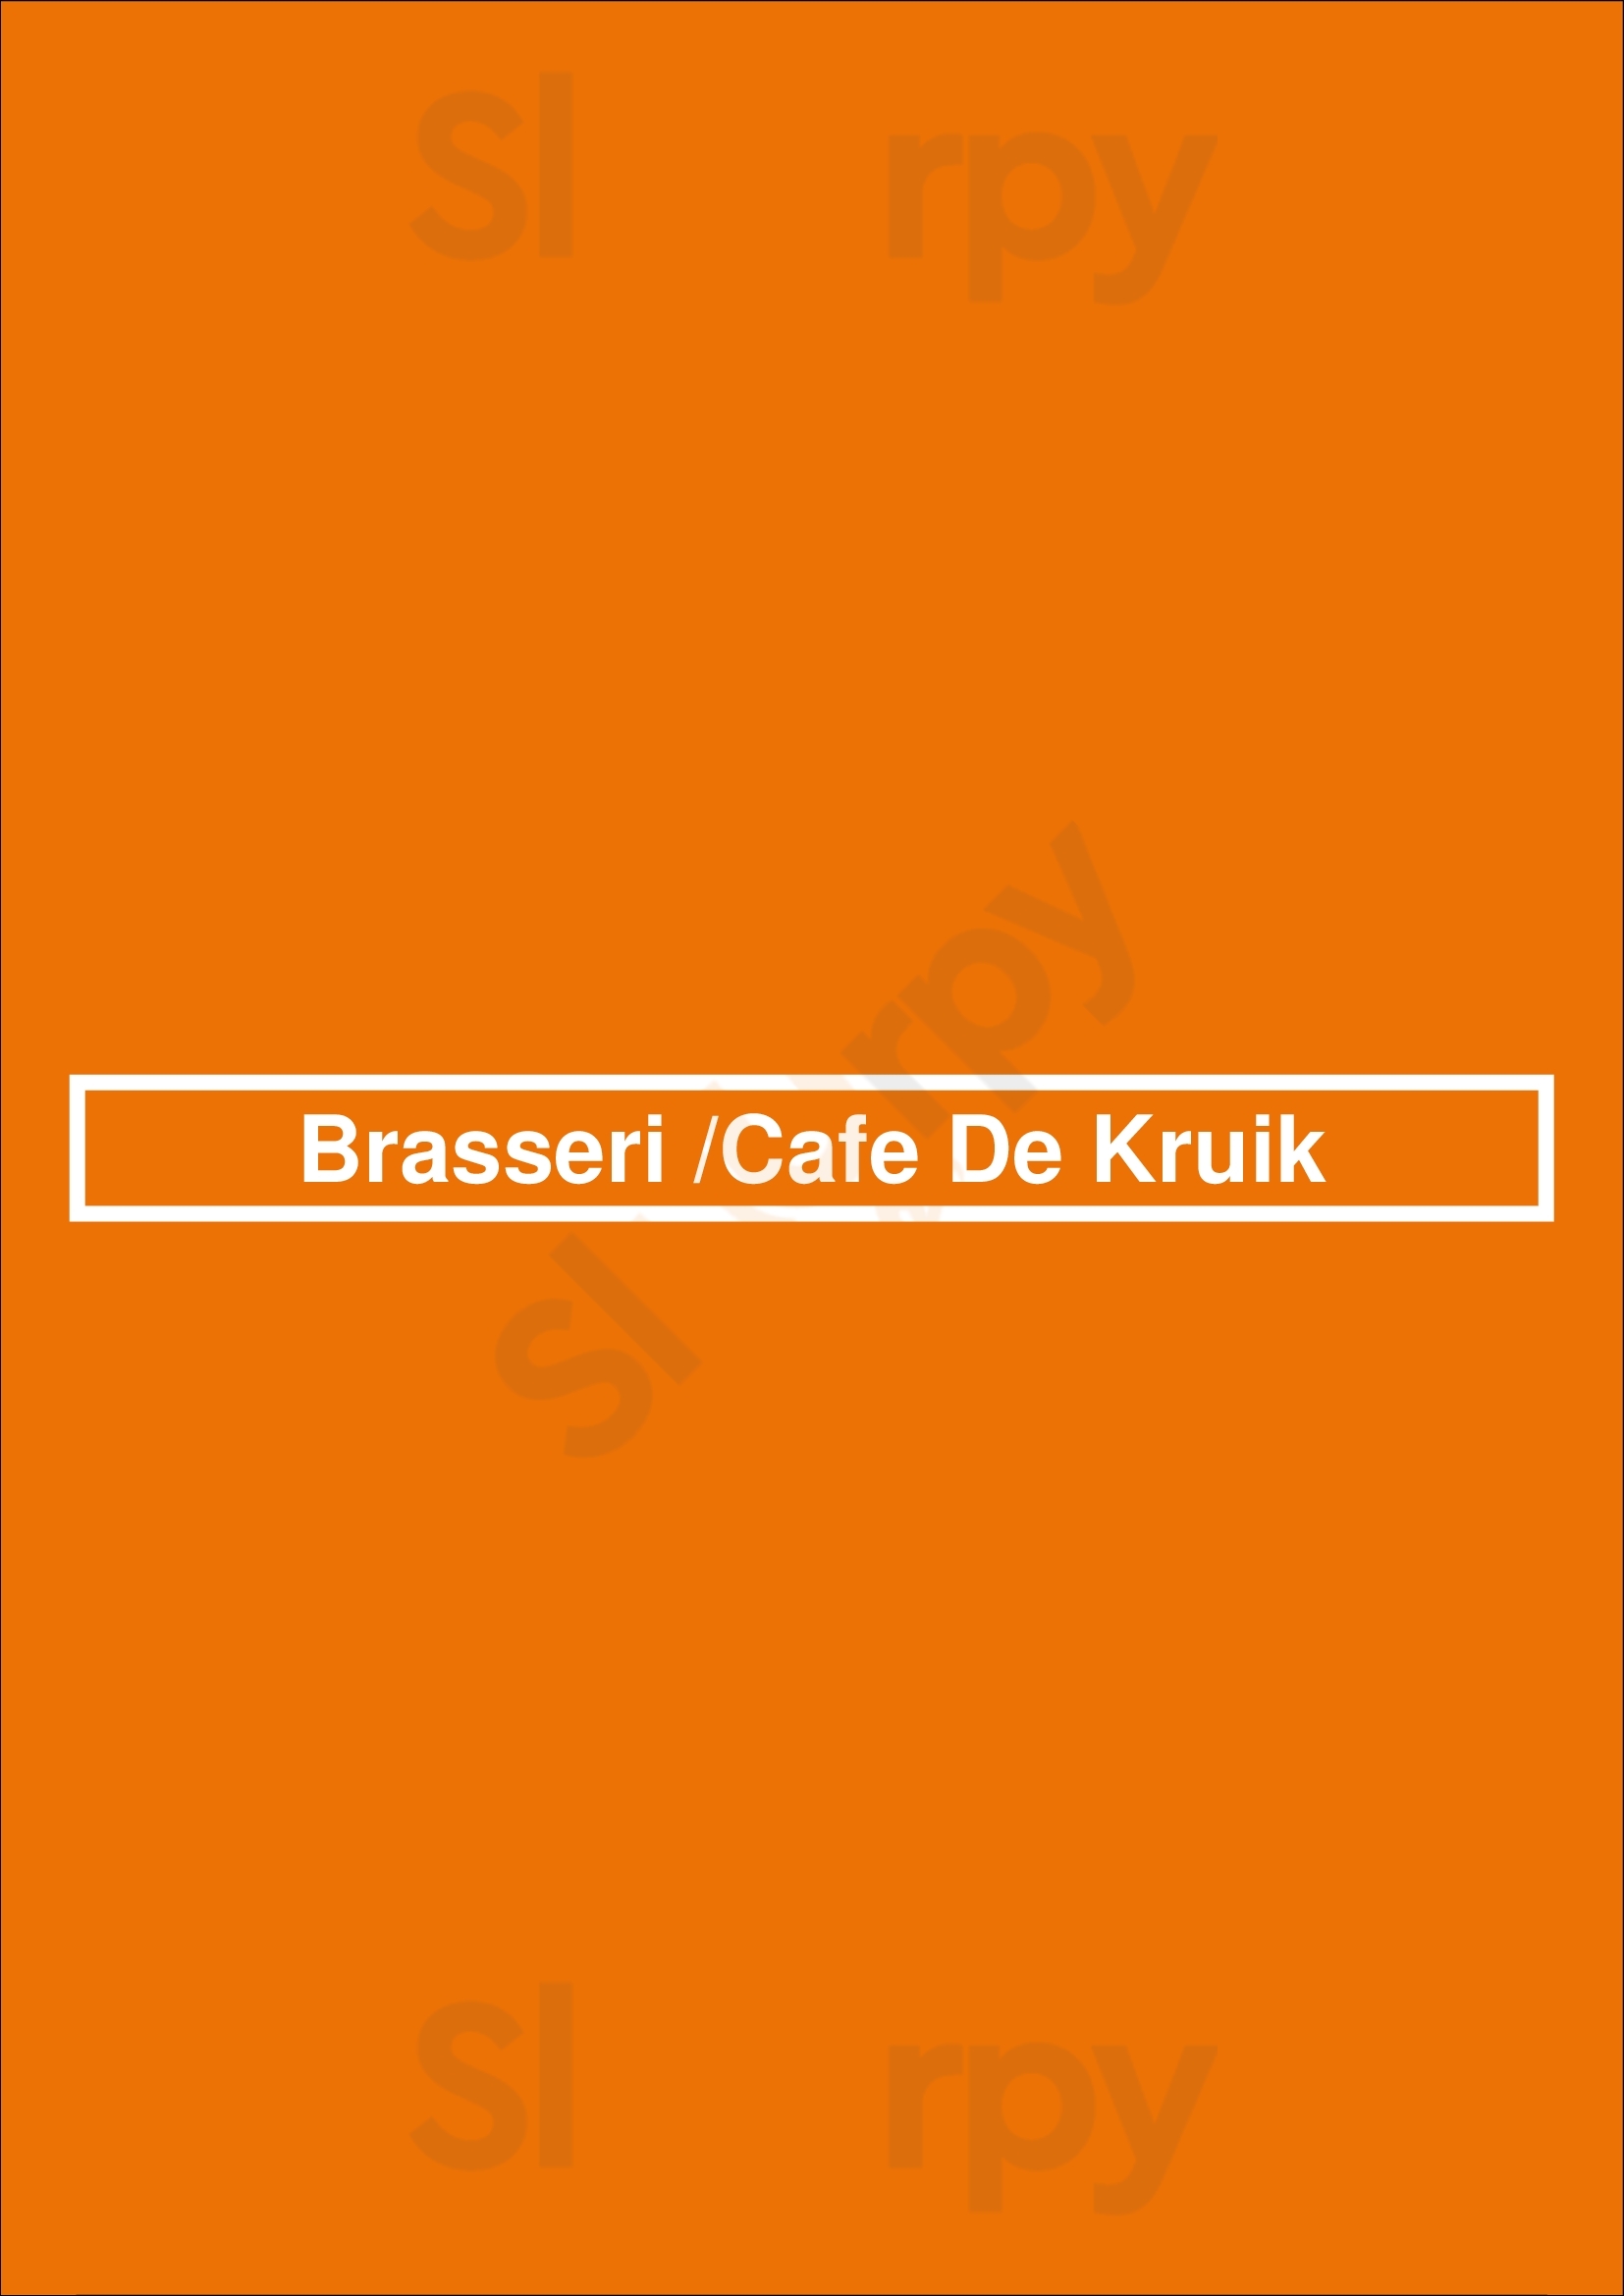 Brasseri /cafe De Kruik Nuenen Menu - 1